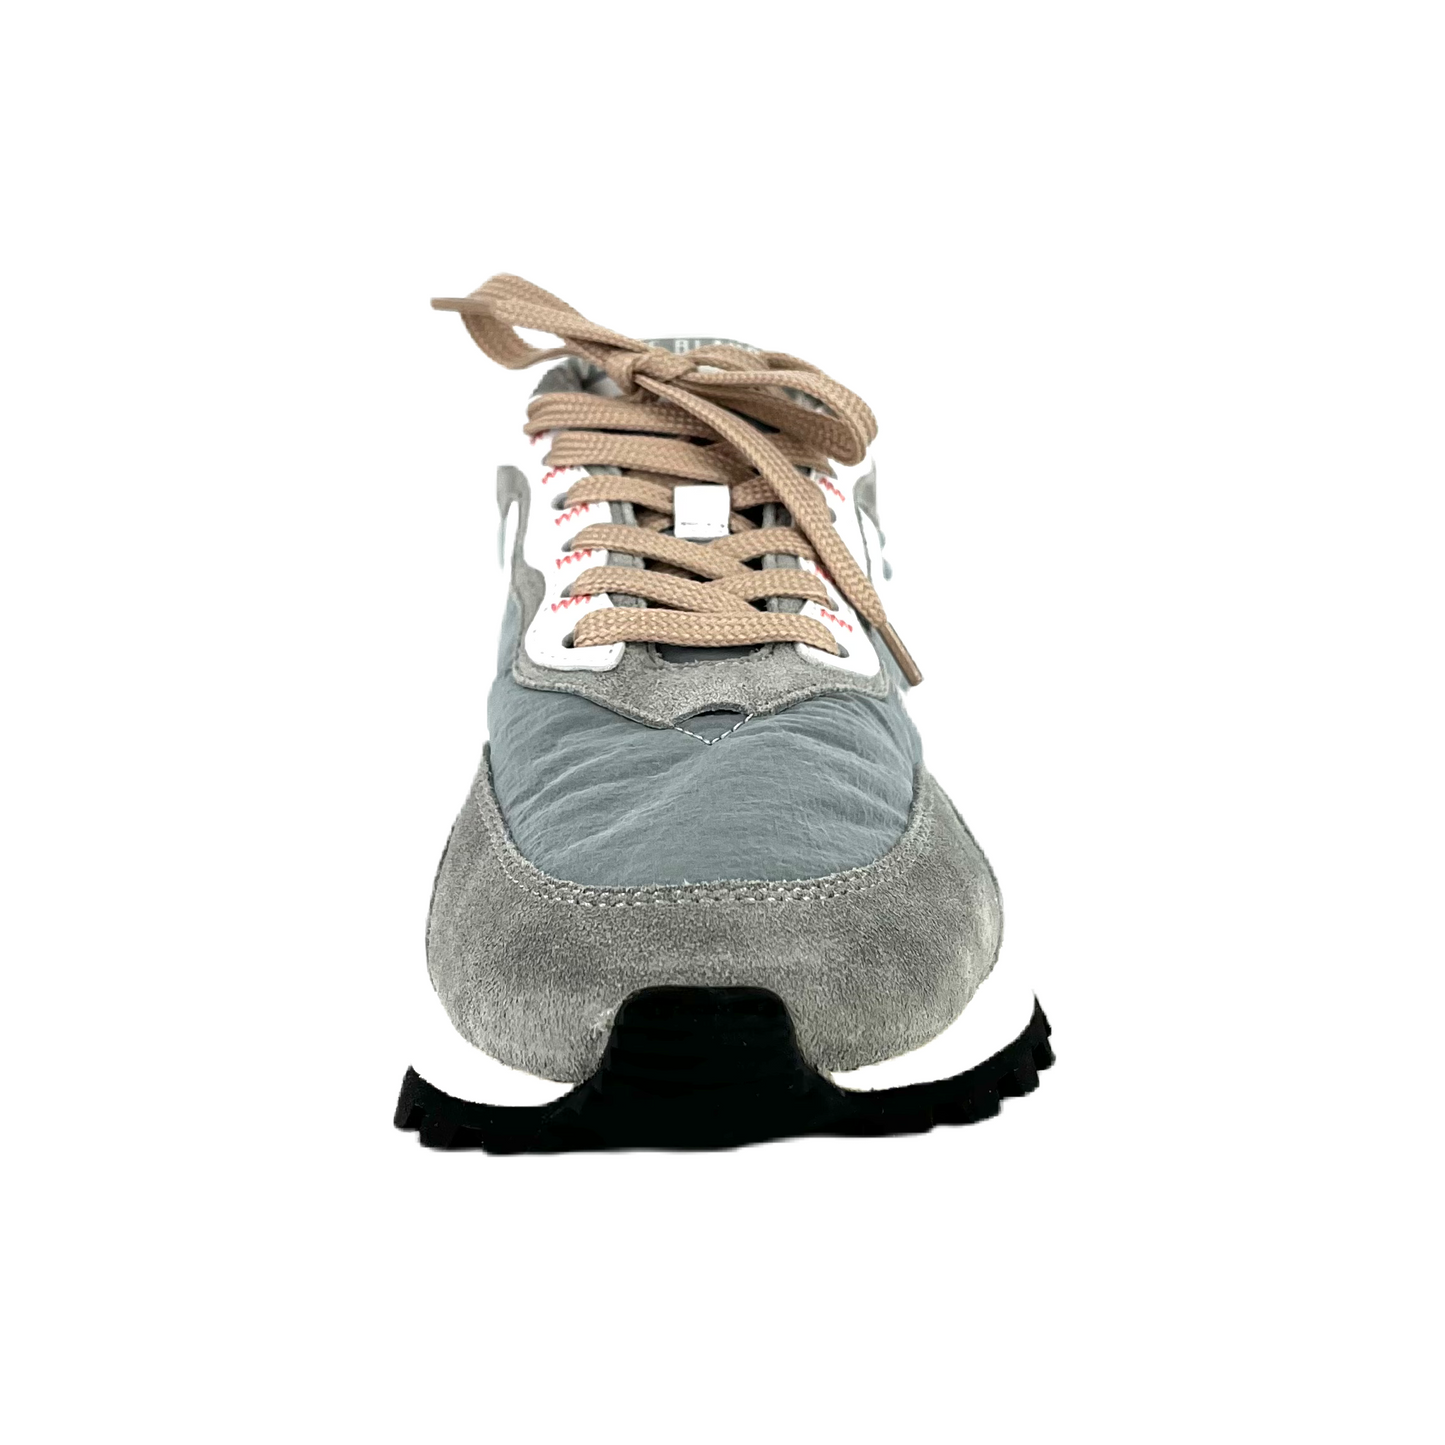 Sneakers De La Marca Voile Blanche Para Mujer Modelo Qwark Hype Suede/Nylon Sage Dark Gray En Color Gris